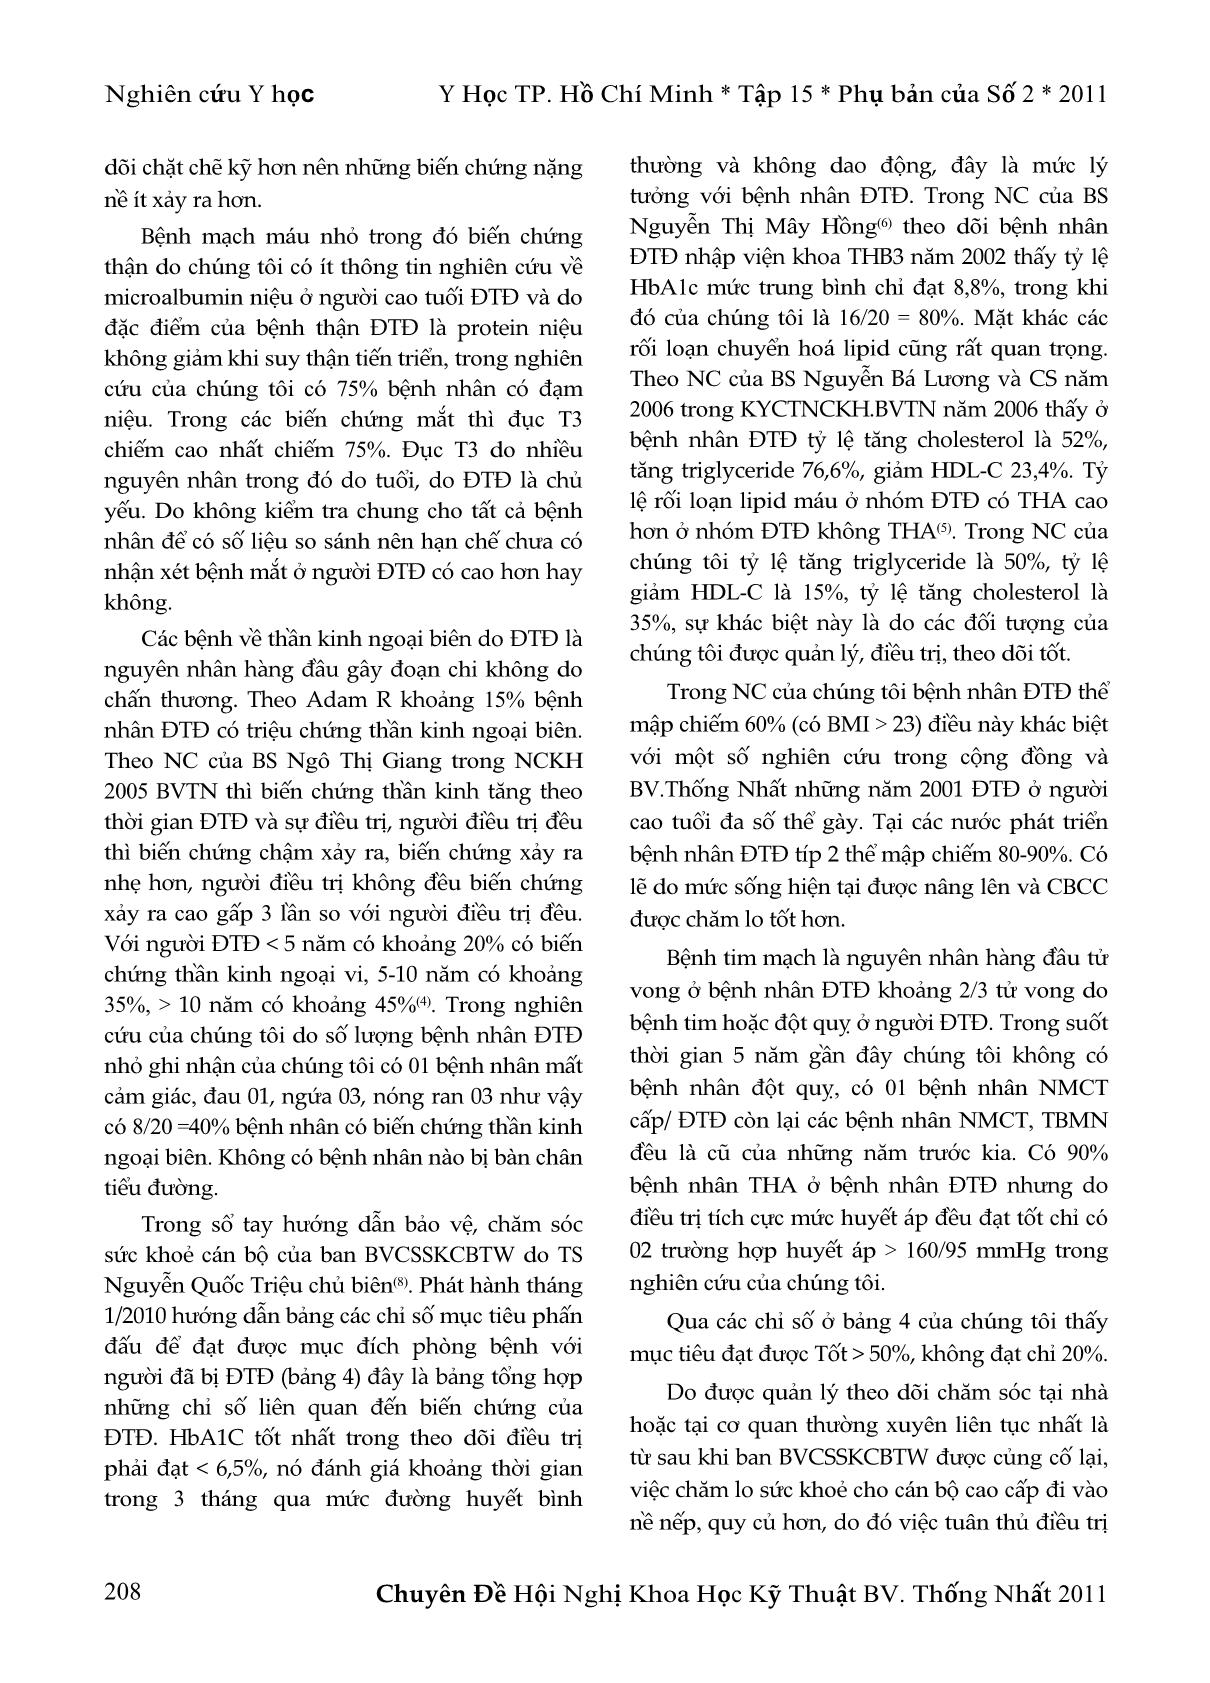 Tình hình quản lý bệnh đái tháo đường ở người cao tuổi 6 tháng đầu năm 2010 tại phòng BVSKTW-2B trang 6